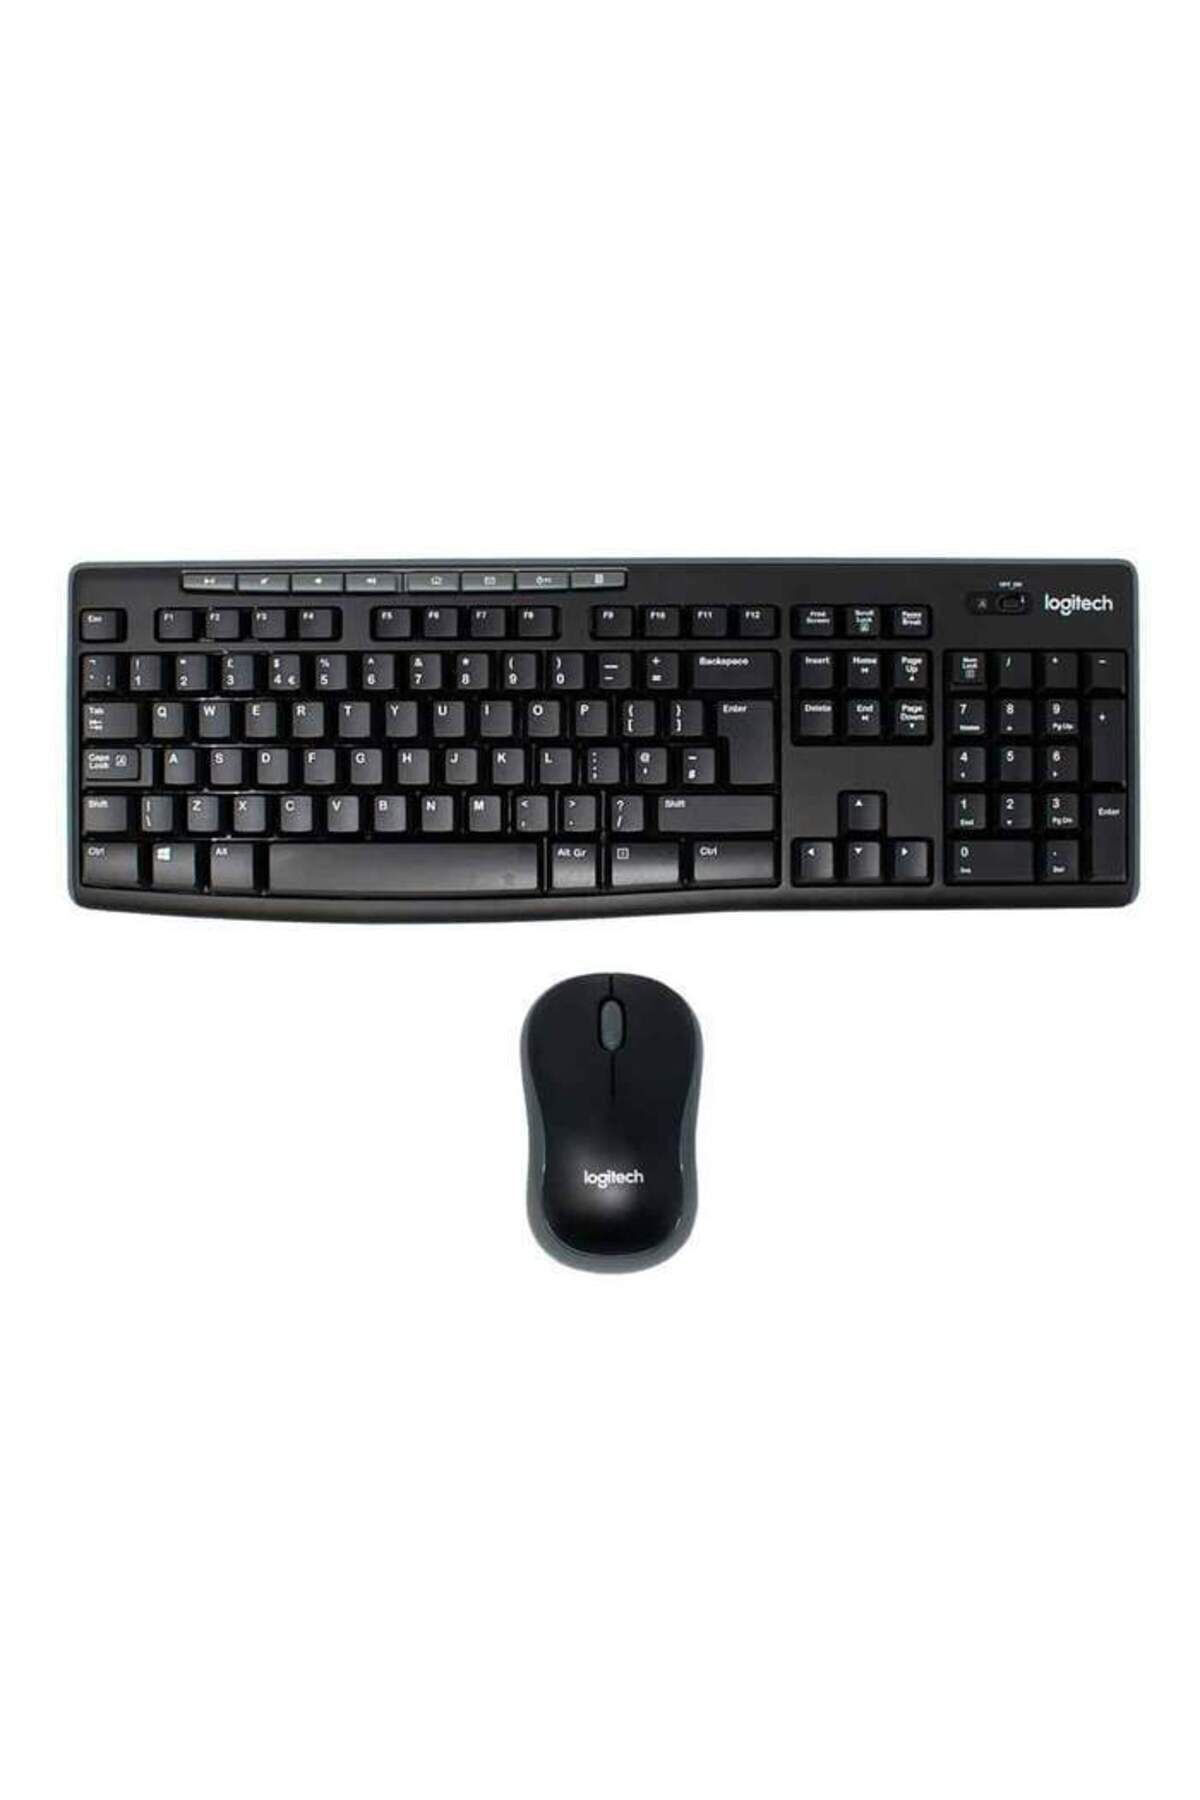 logitech Mk270 920-004525 Nano Usb Q Tr Optik Siyah Kablosuz Klavye Mouse Set